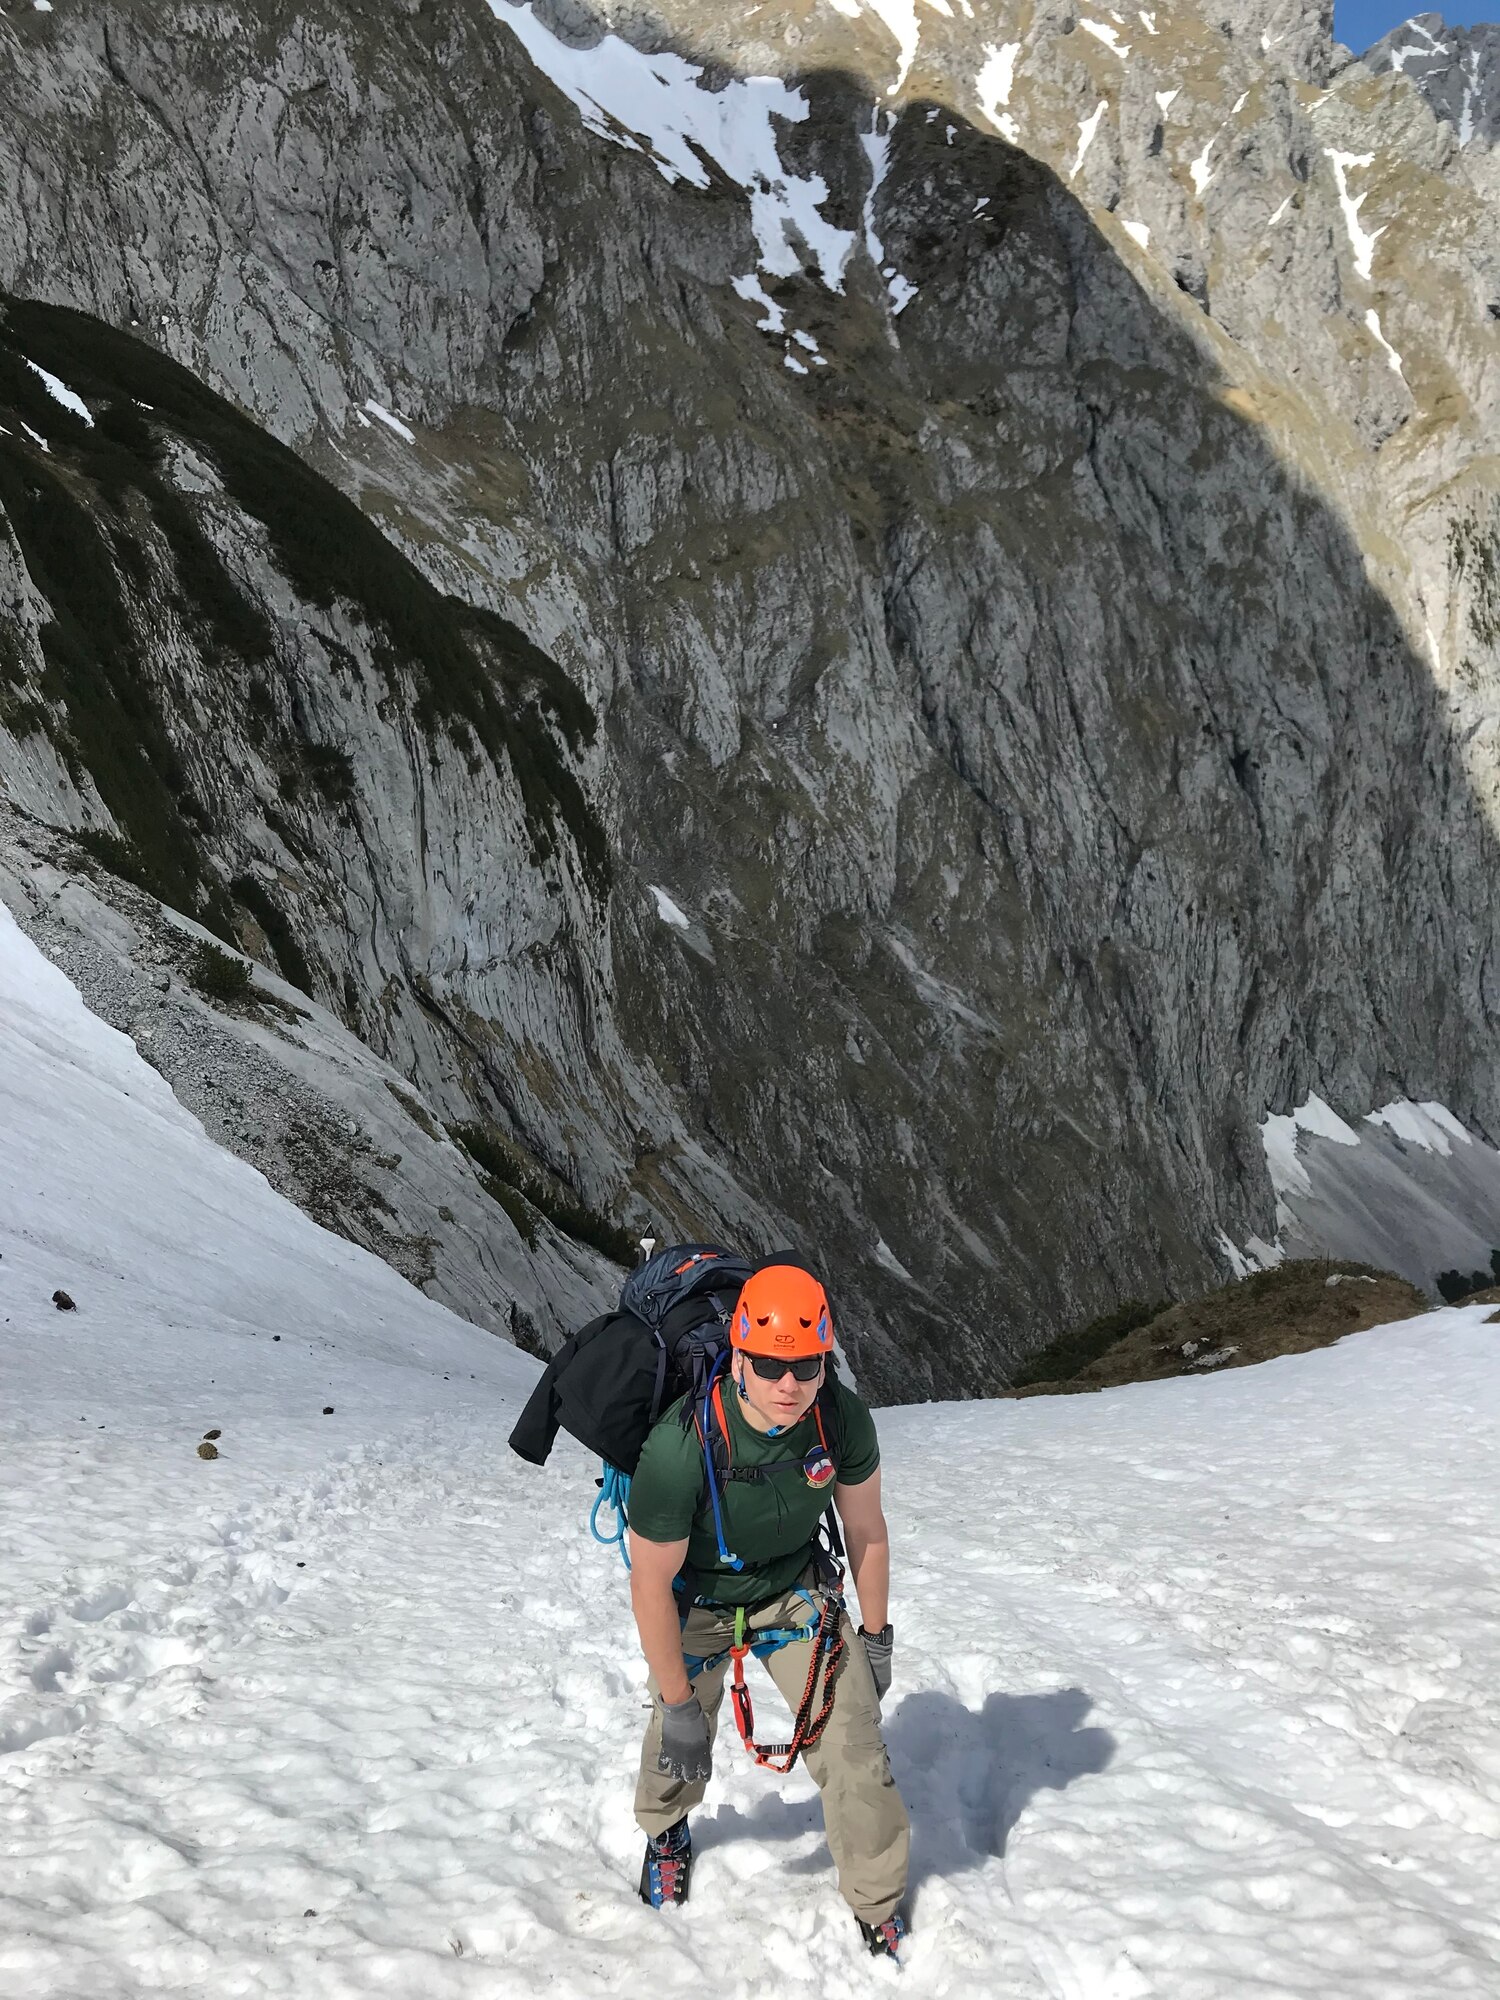 Senior Airman Ruben Madrid climbs up a mountain